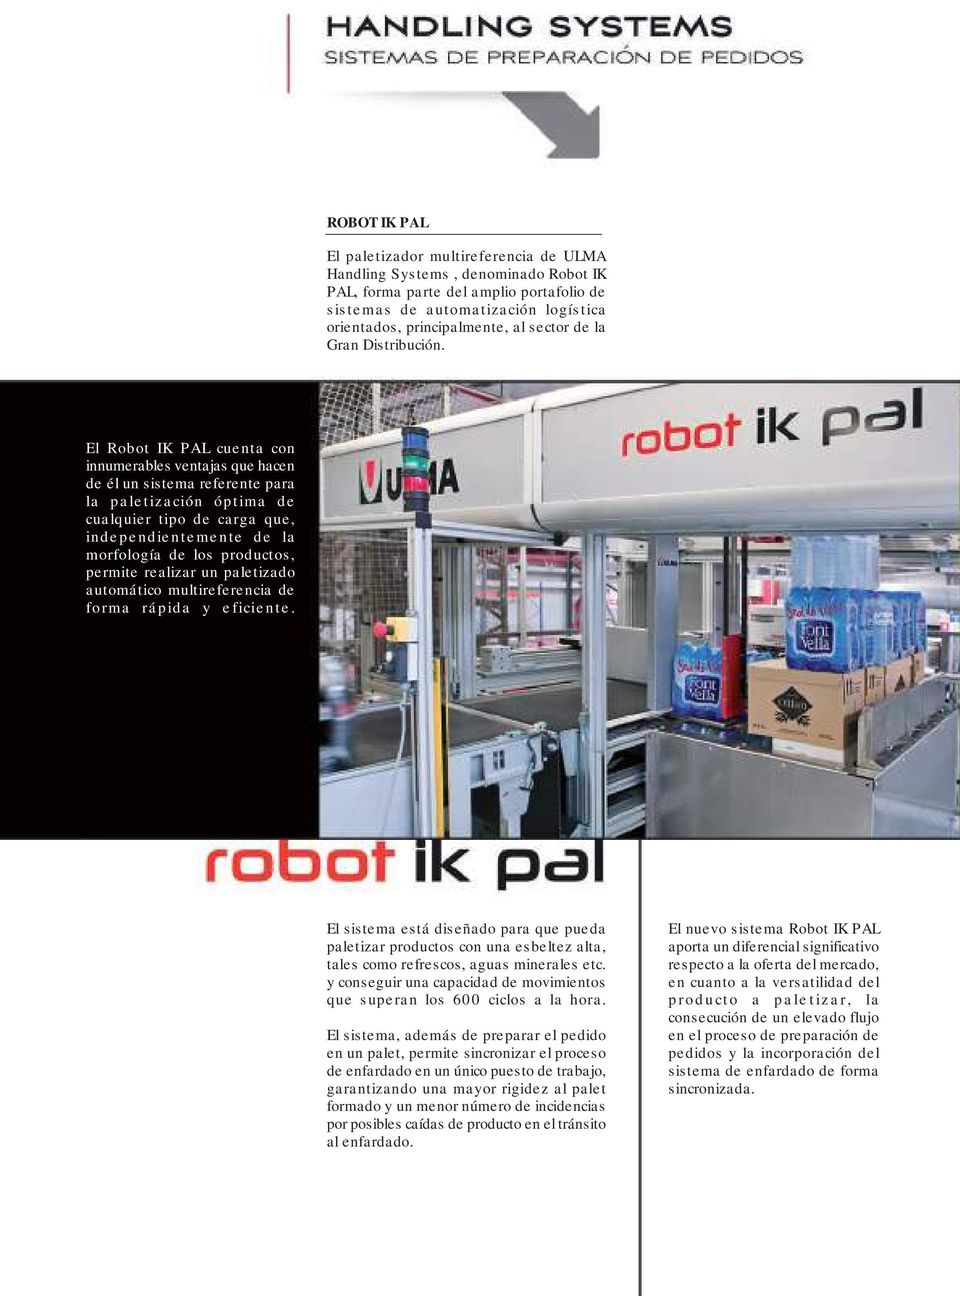 El Robot IK PAL cuenta con innumerables ventajas que hacen de él un sistema referente para la paletización óptima de cualquier tipo de carga que, independientemente de la morfología de los productos,